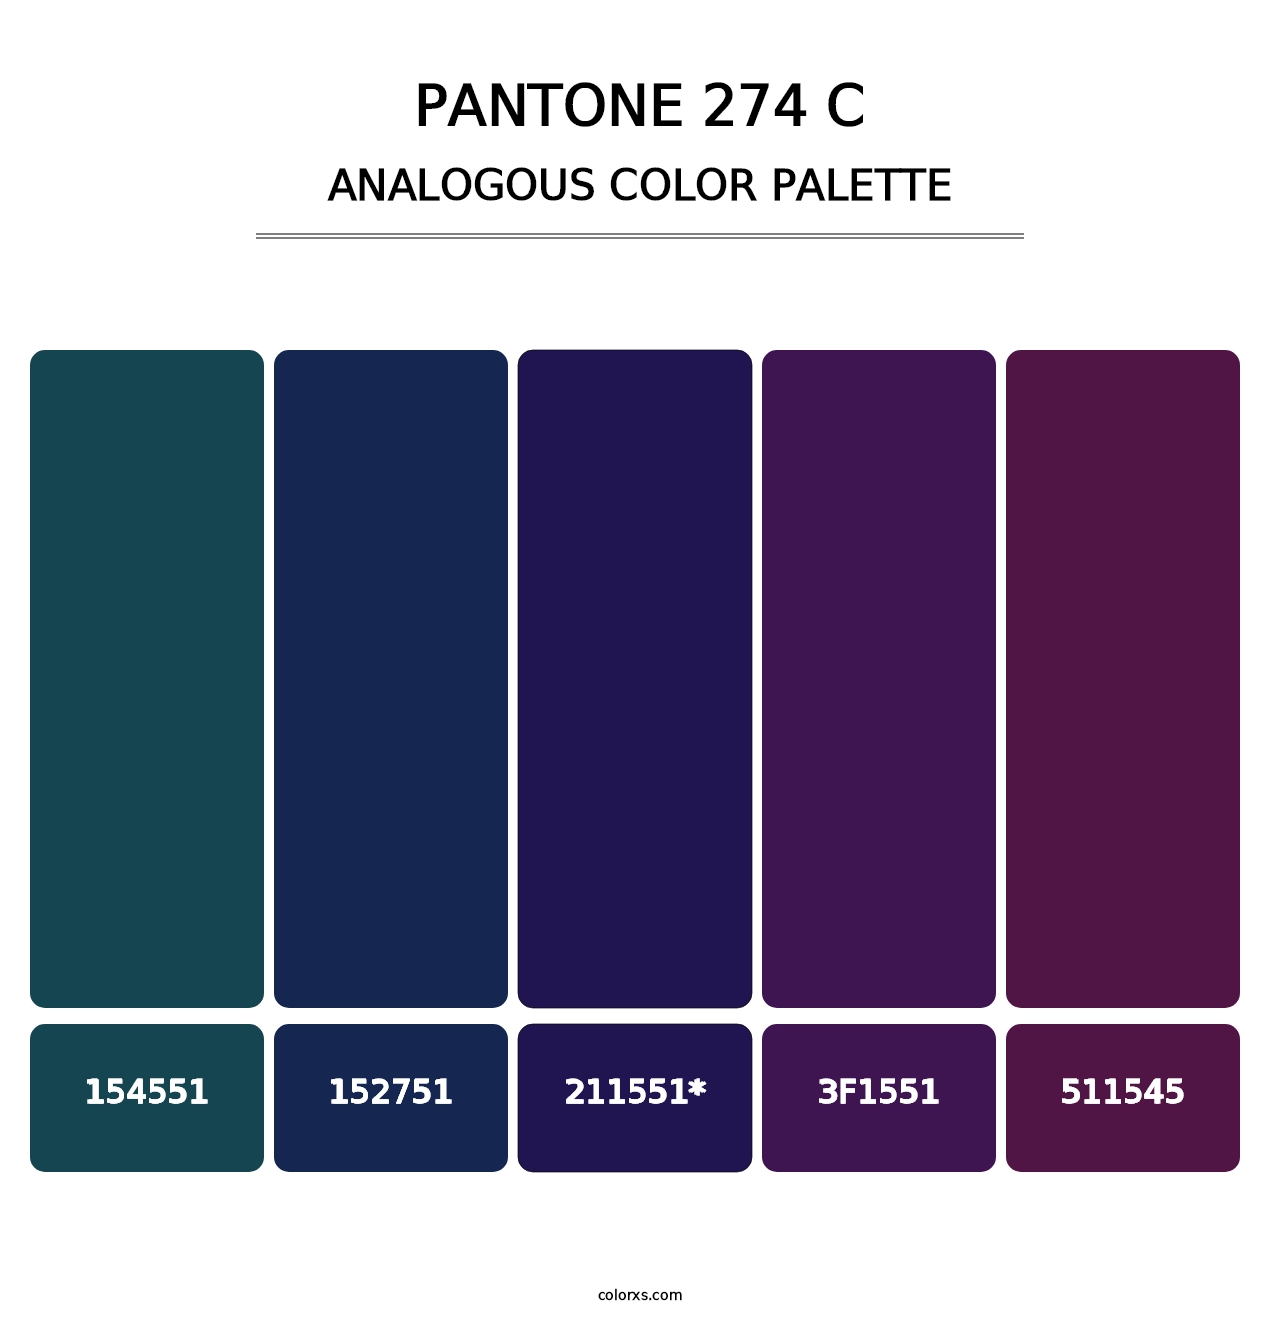 PANTONE 274 C - Analogous Color Palette